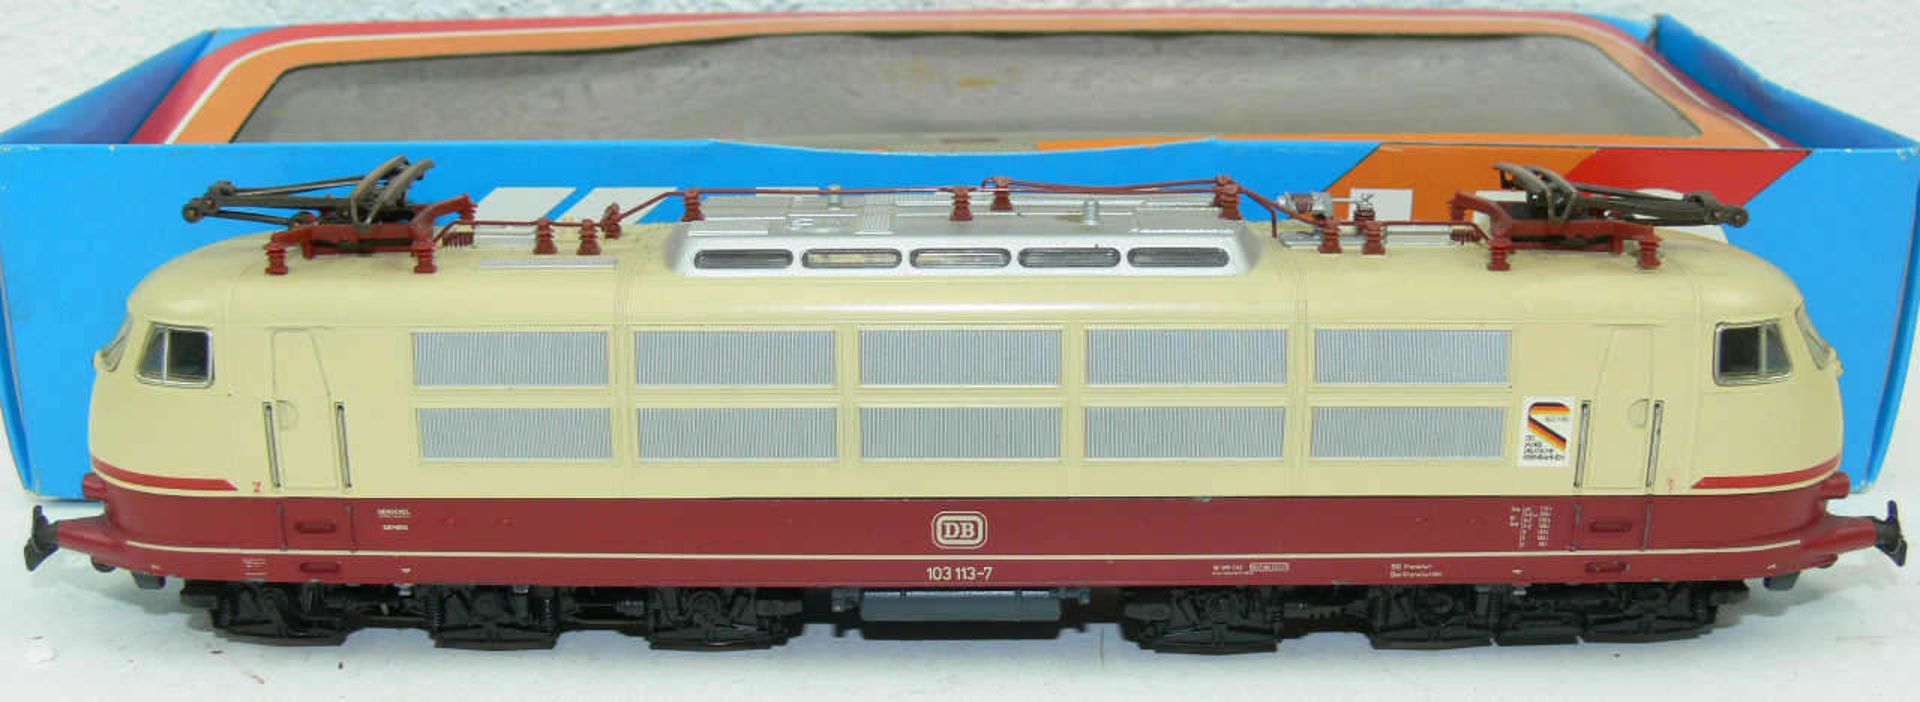 Märklin H0 3357, E - Lokomotive BR 103 der DB. BN 103 113-75. Leicht Laufspuren. In OVP (ohne